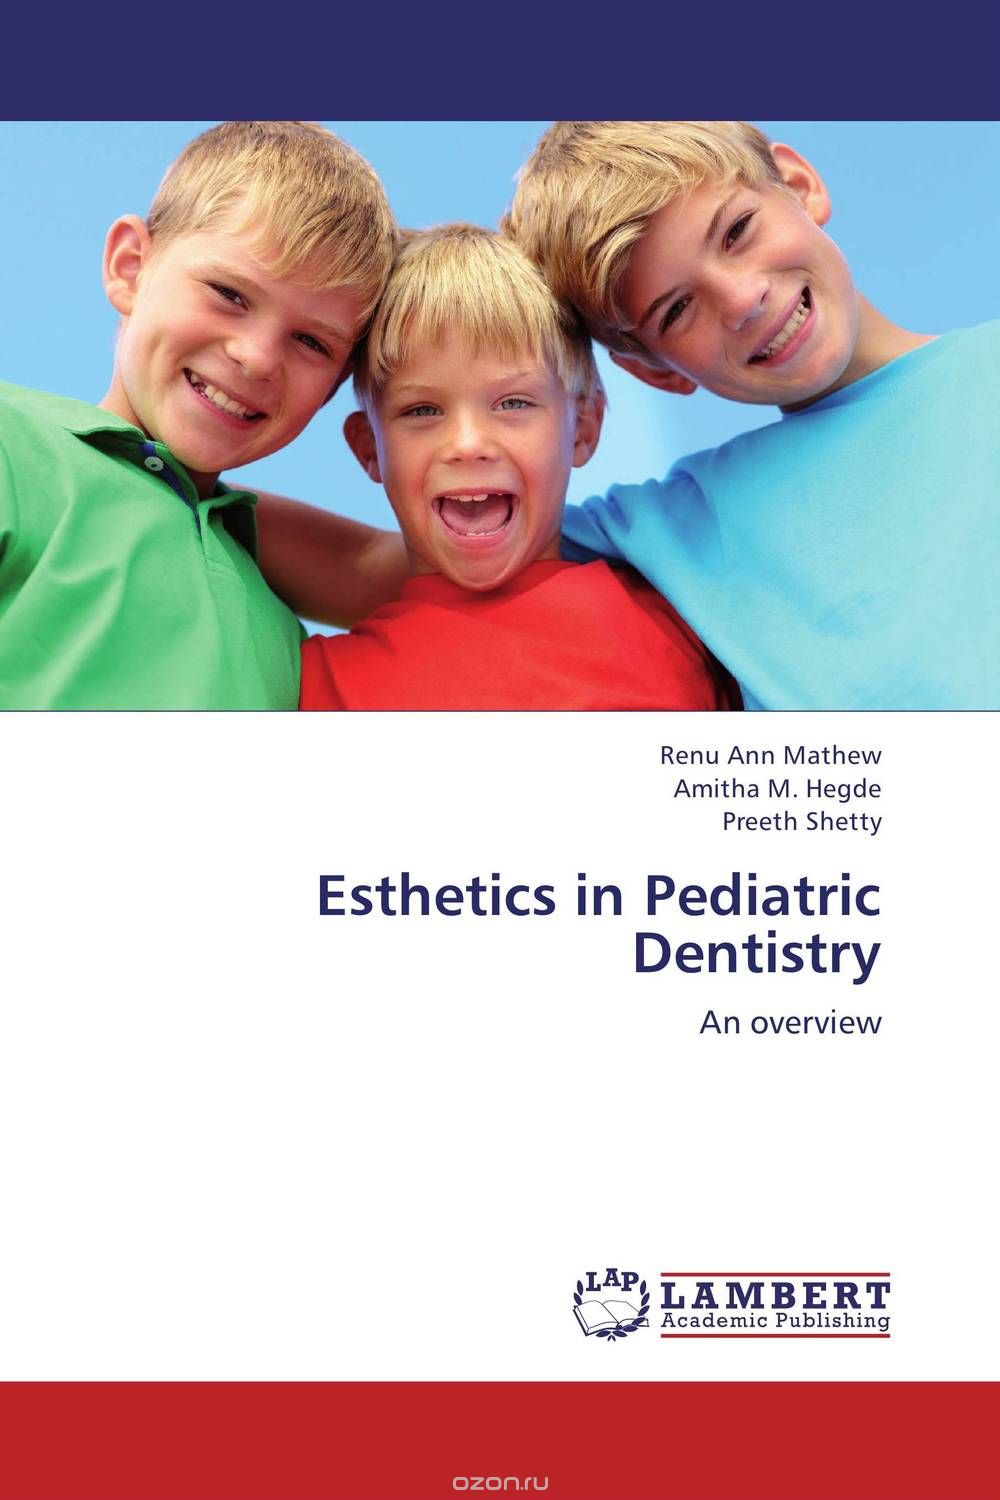 Скачать книгу "Esthetics in Pediatric Dentistry"